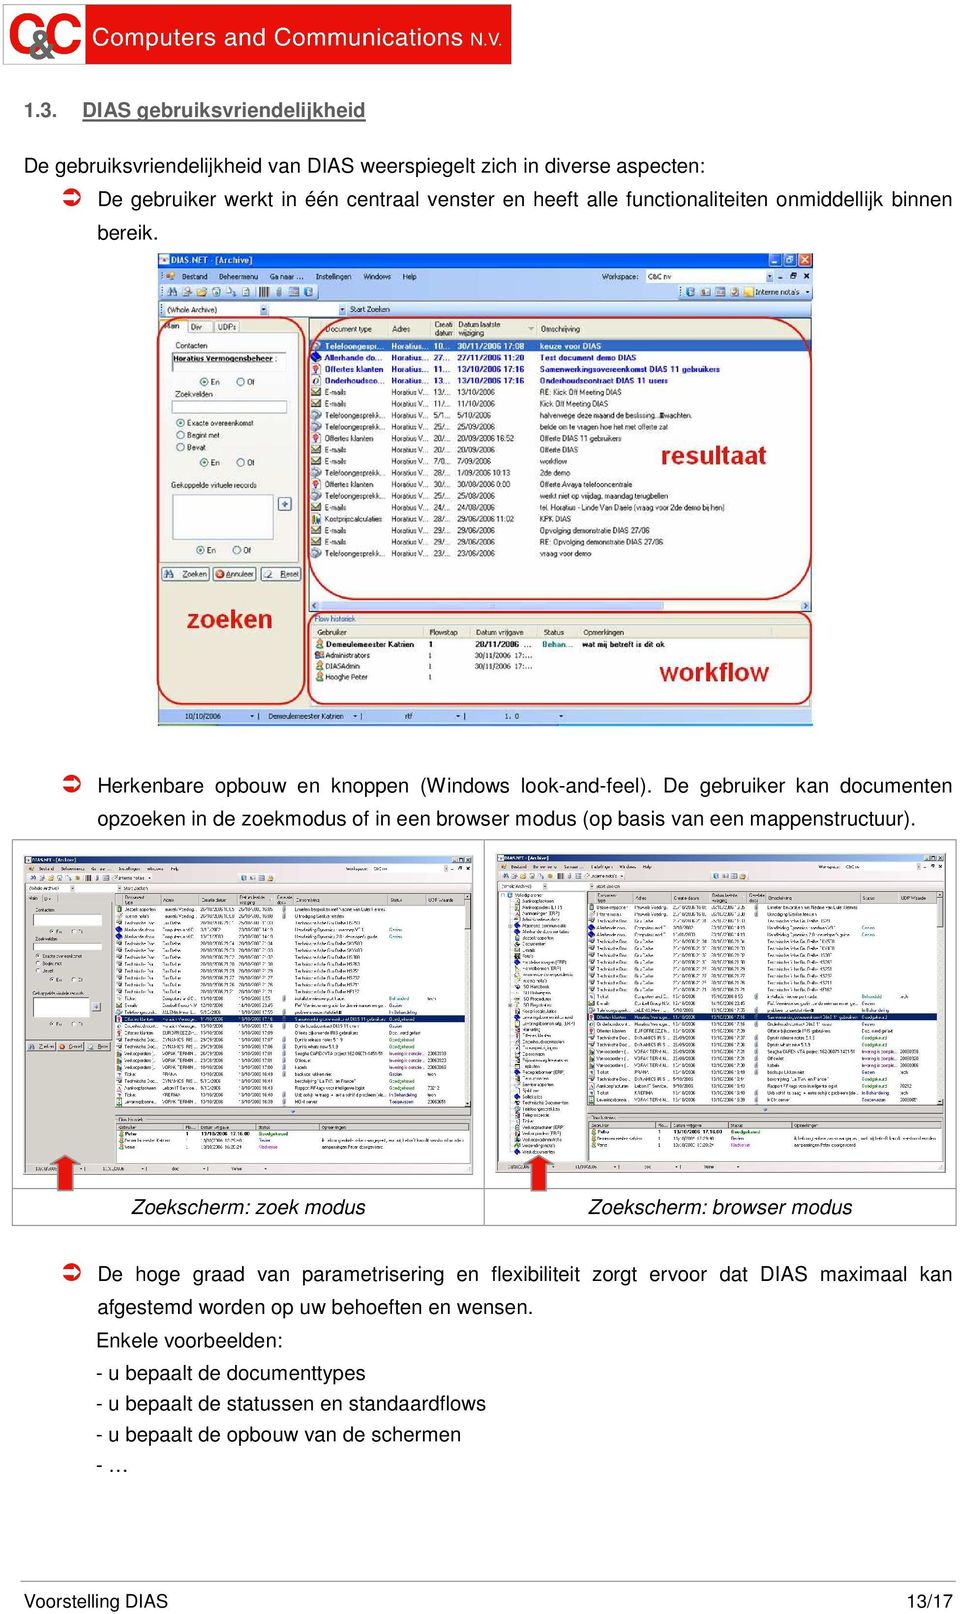 De gebruiker kan documenten opzoeken in de zoekmodus of in een browser modus (op basis van een mappenstructuur).